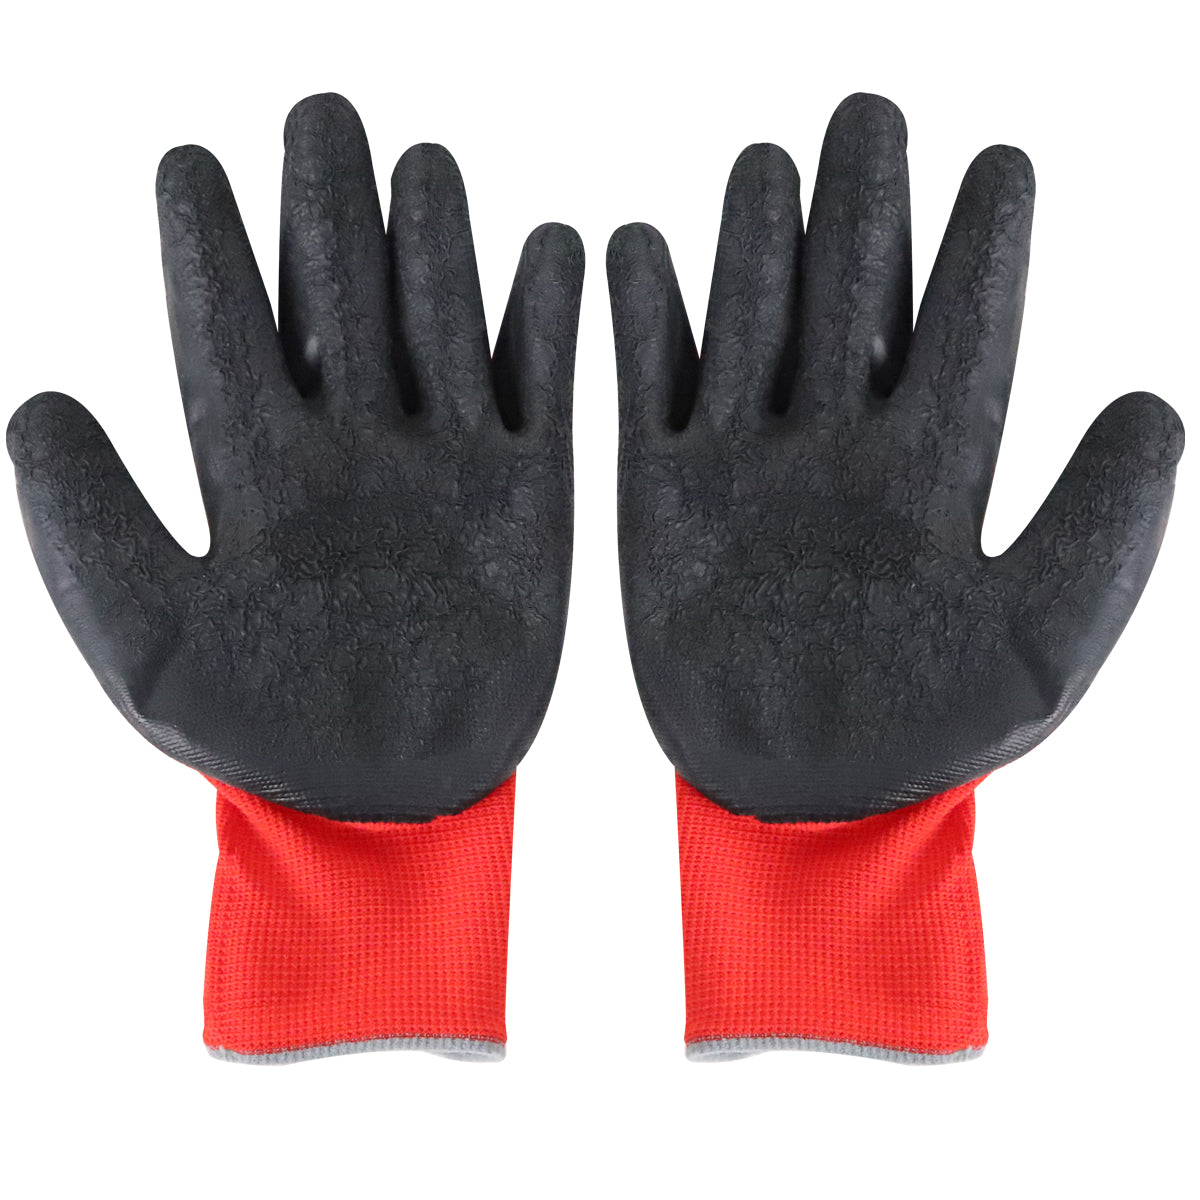 Excel Builder Gloves Red & Black Size XL Pack of 12